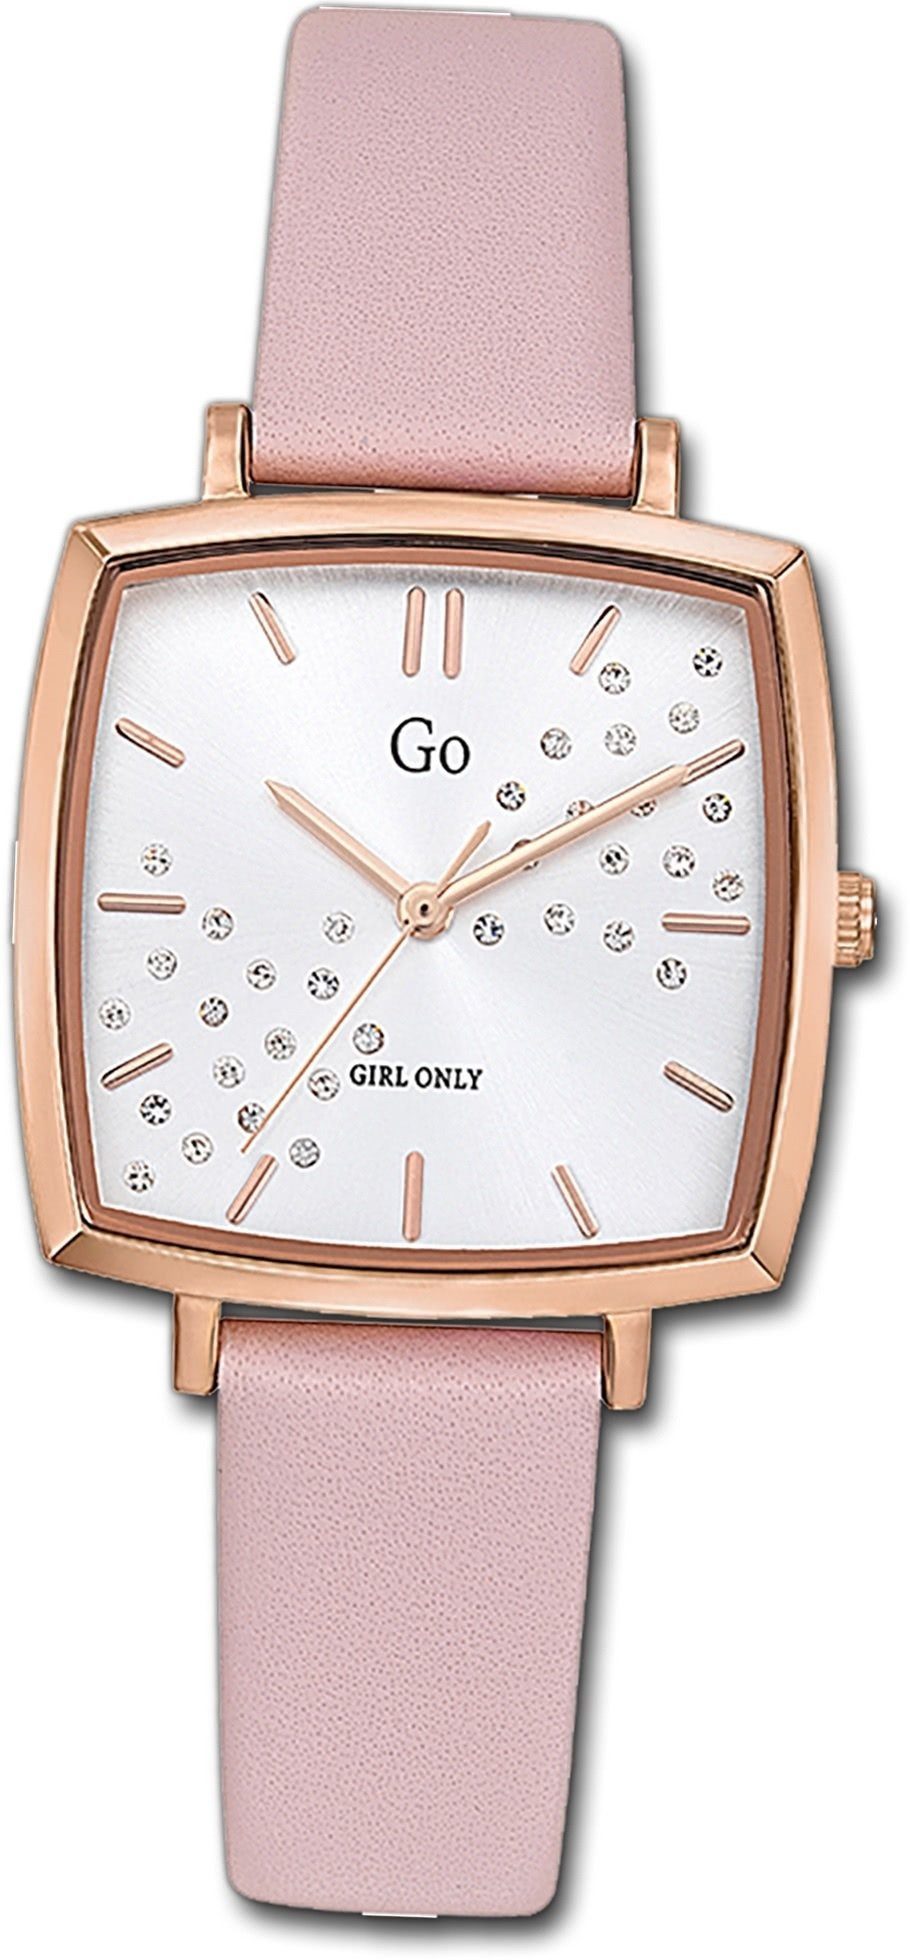 699343, Leder Fashion- Girl Uhr Only Damen mit klein eckiges Quarzuhr Gehäuse, Damenuhr (ca. 30mm), Lederarmband, Only Girl